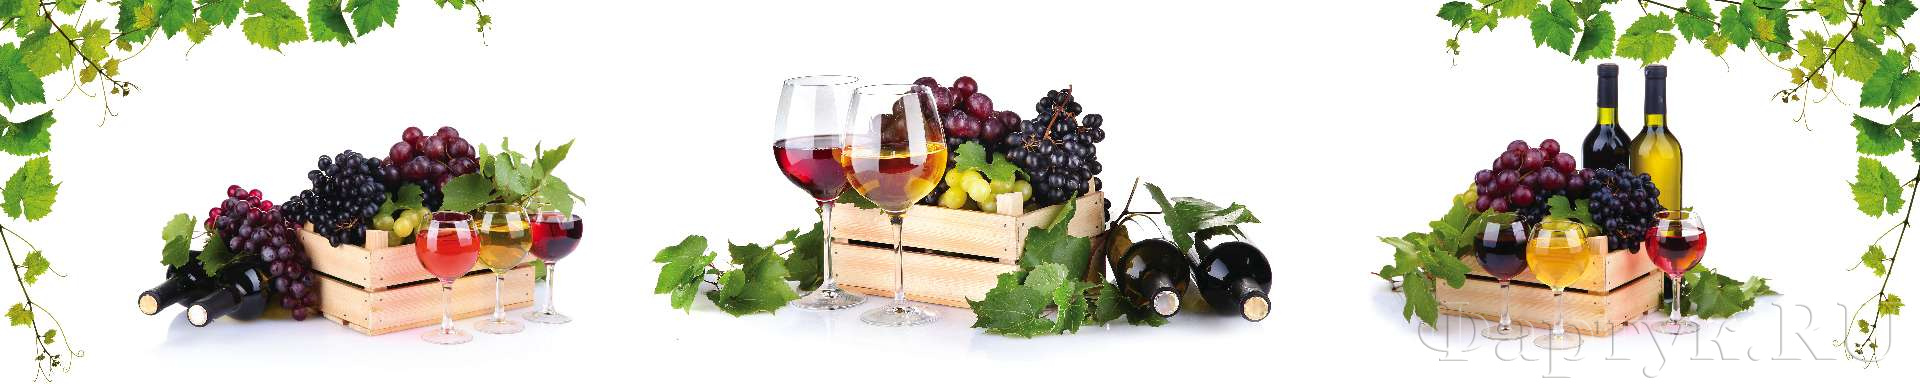 Ящики с вином и виноградом